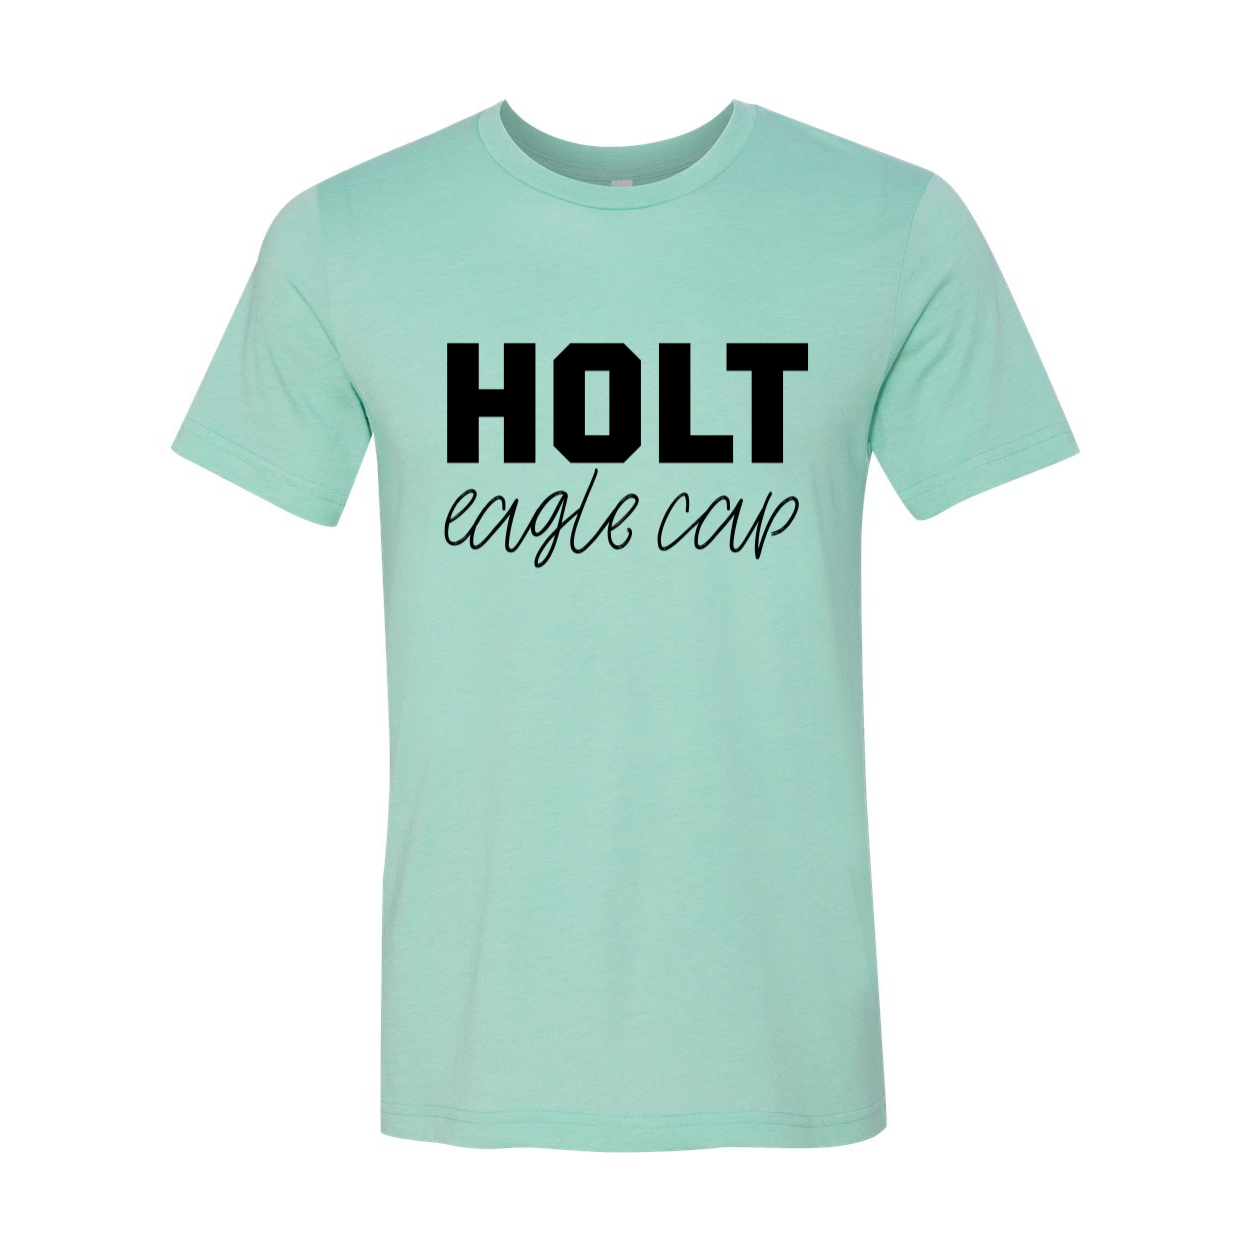 Holt Eagle Cap Solid T-shirt